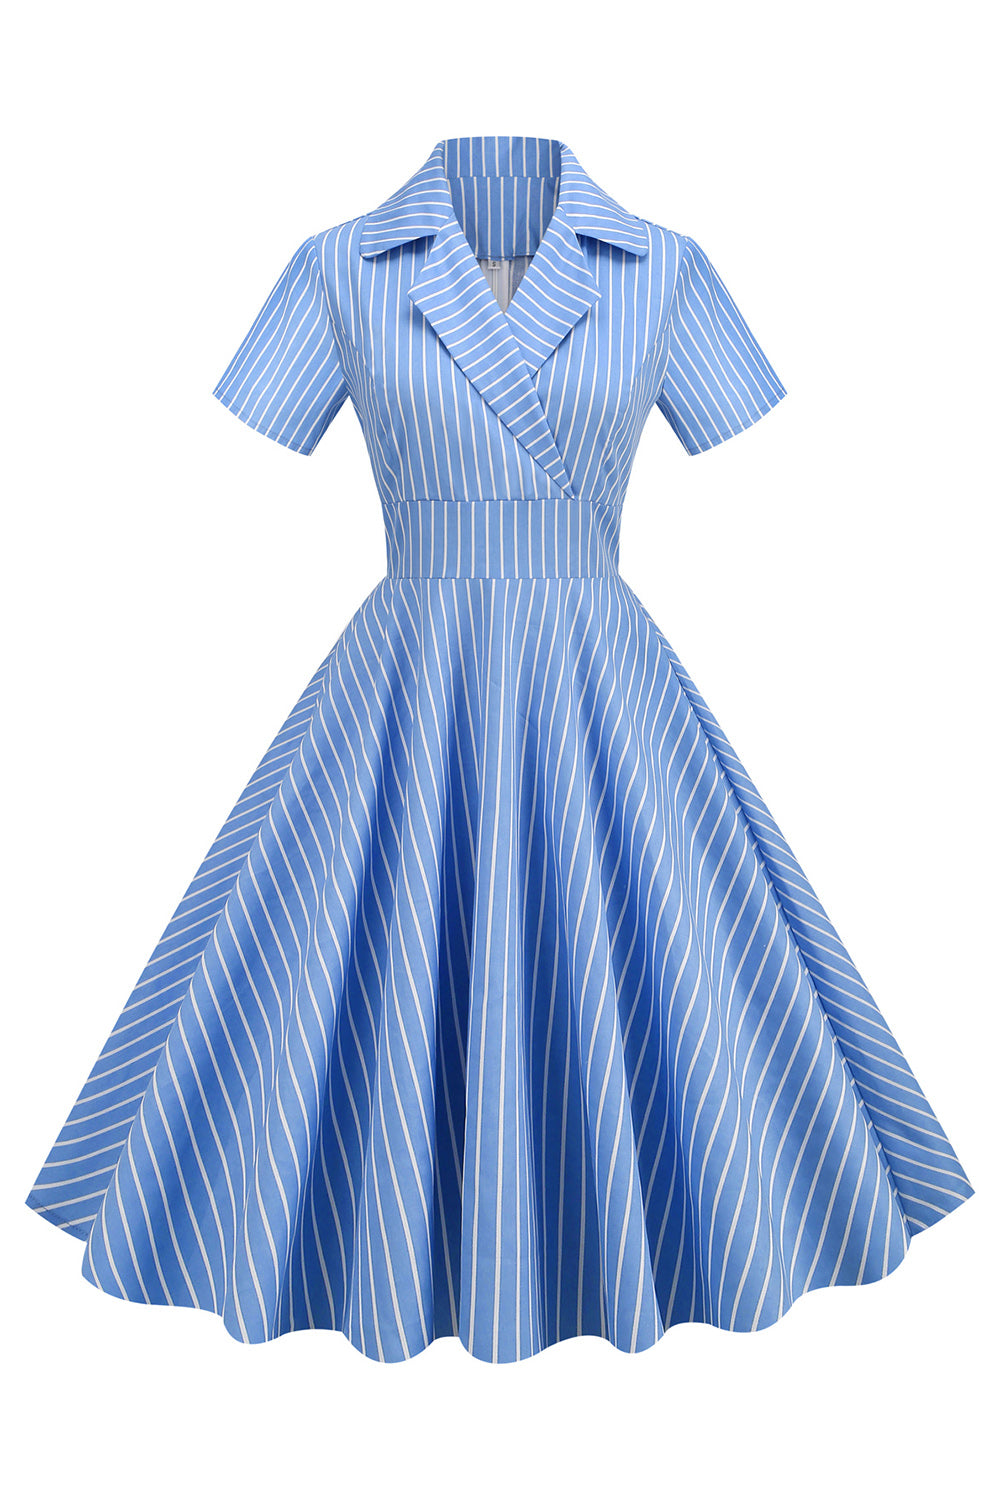 Streifen Vintage 1950er Jahre Kleid mit kurzen Ärmeln